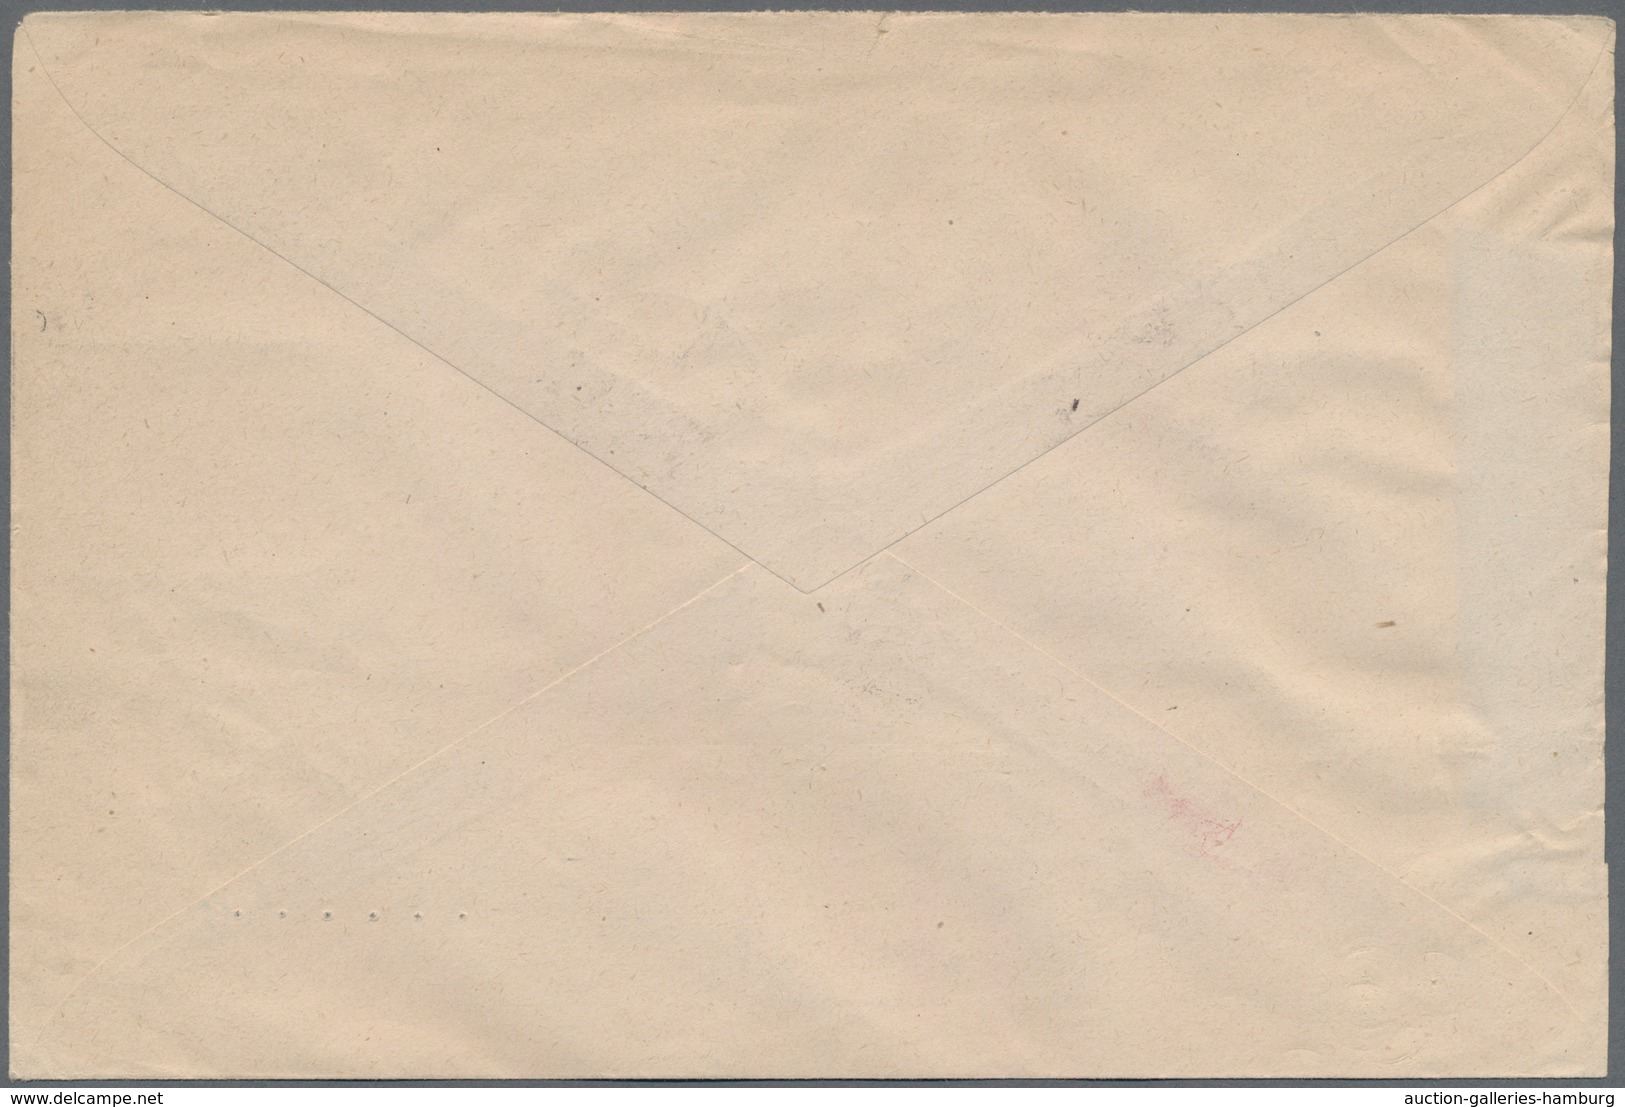 Österreich: 1949, 75 Jahre UPU, Zwei Verschiedene Adresszettel (Michel X+z), Je Auf Luftpostbrief 19 - Ungebraucht